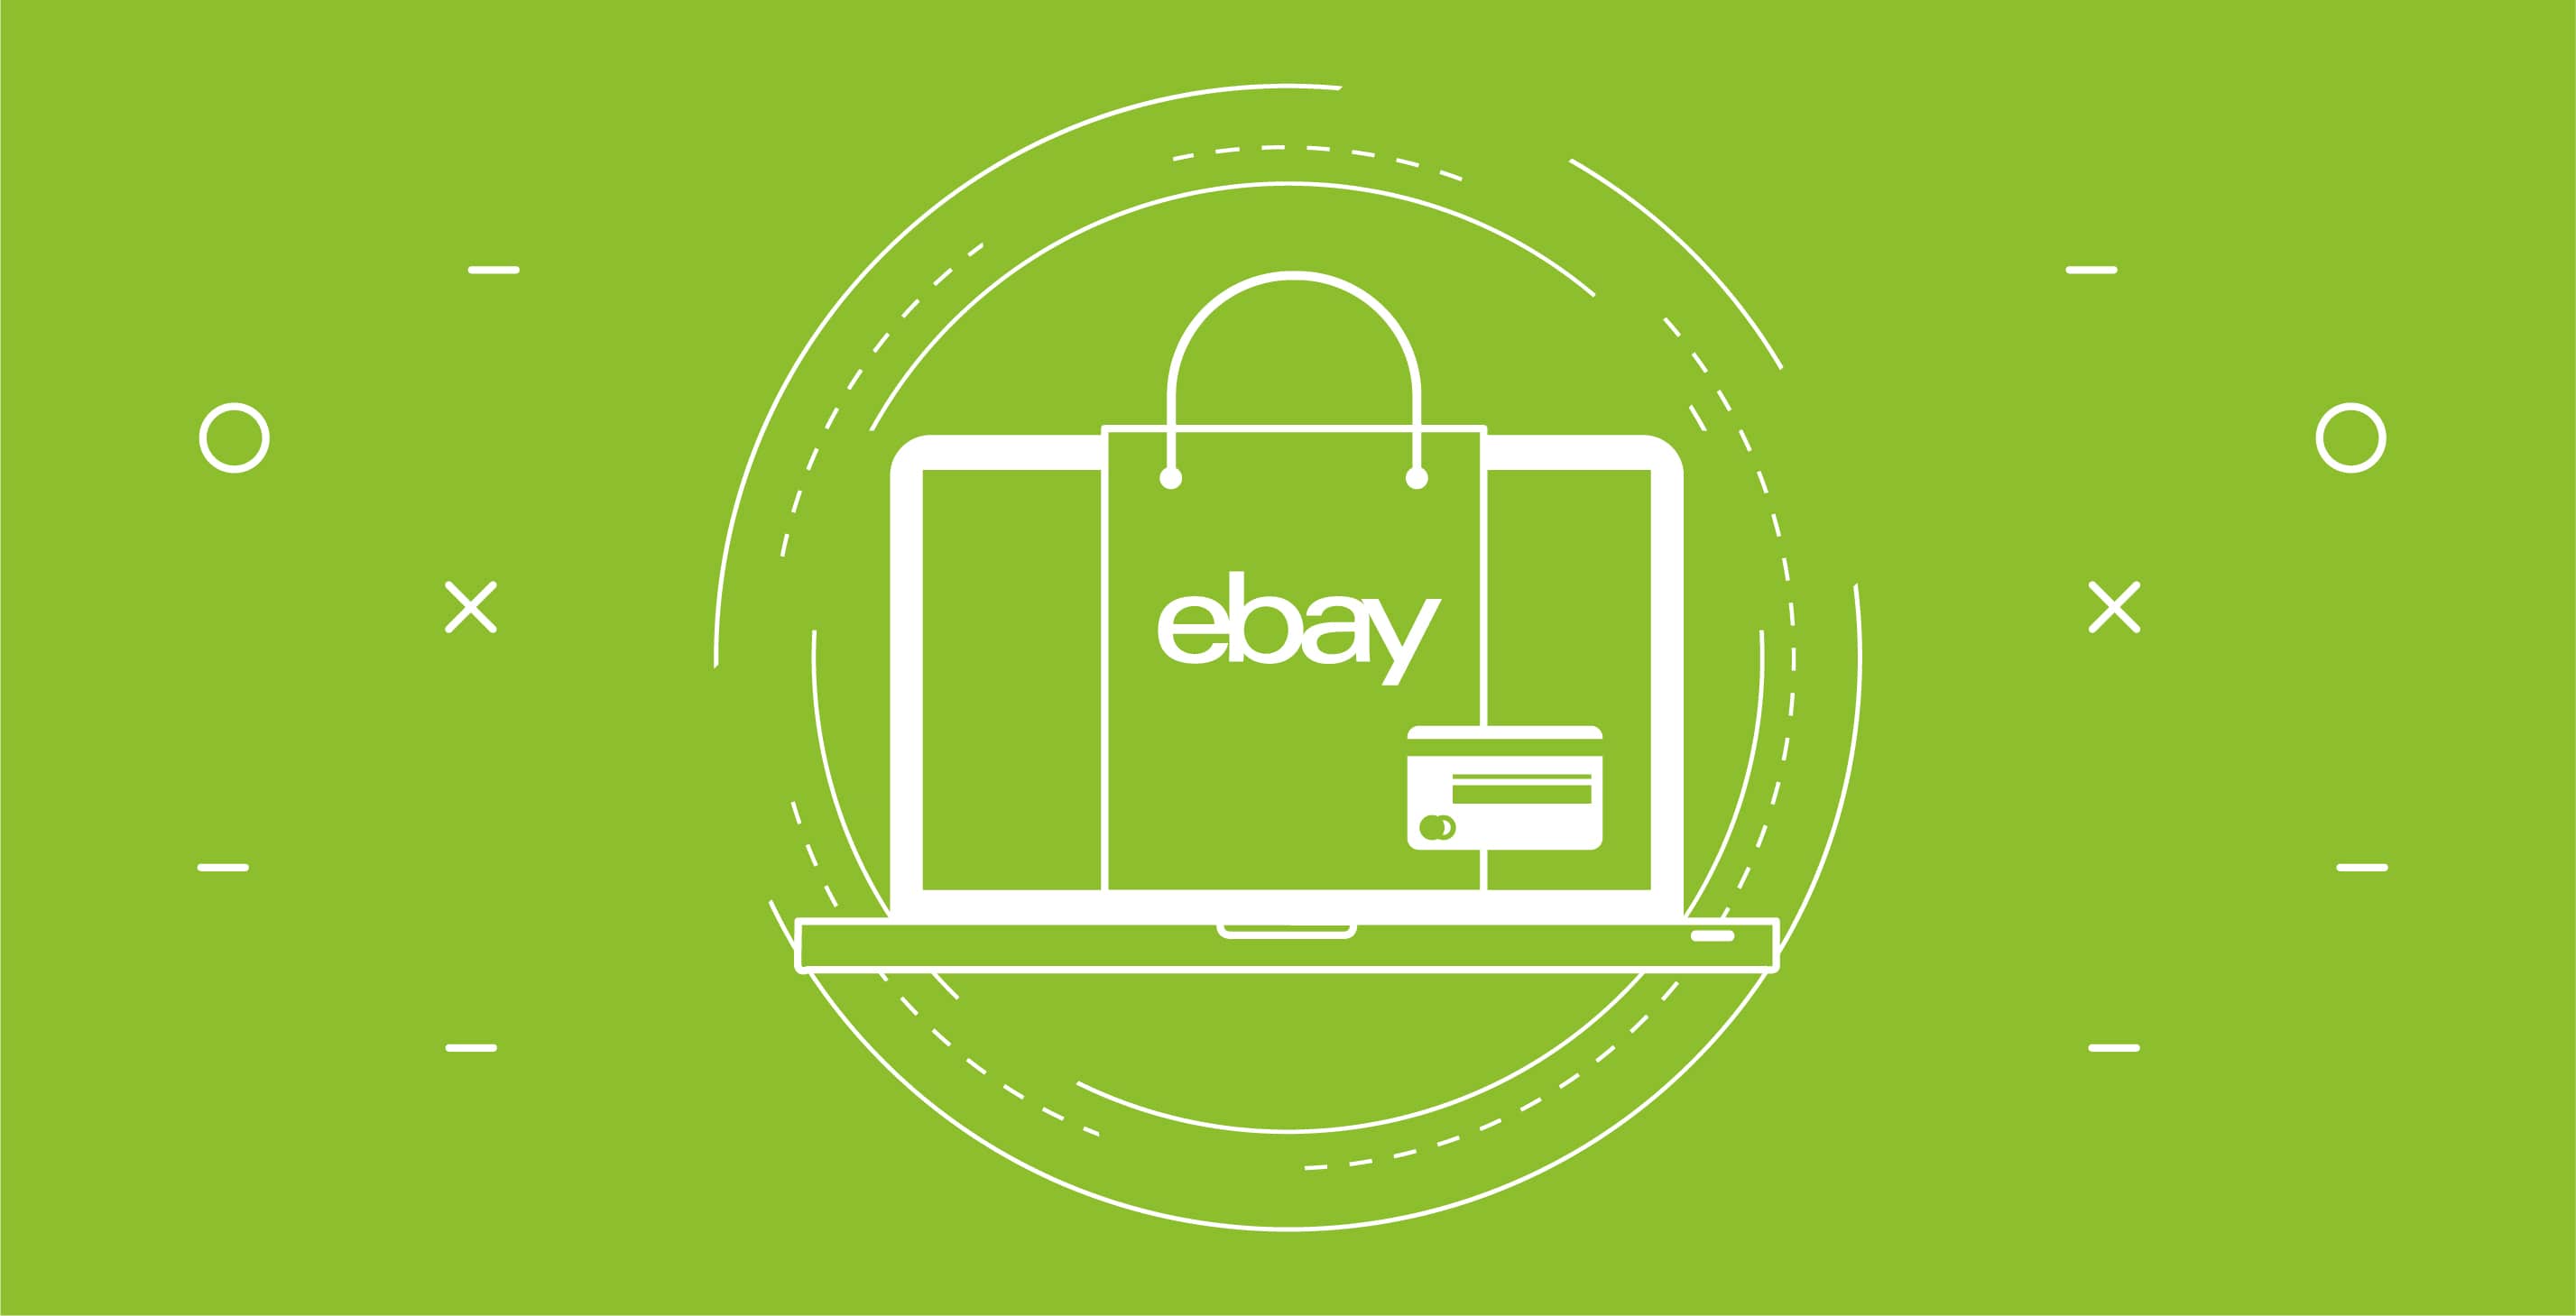 ebay tra i migliori ecommerce